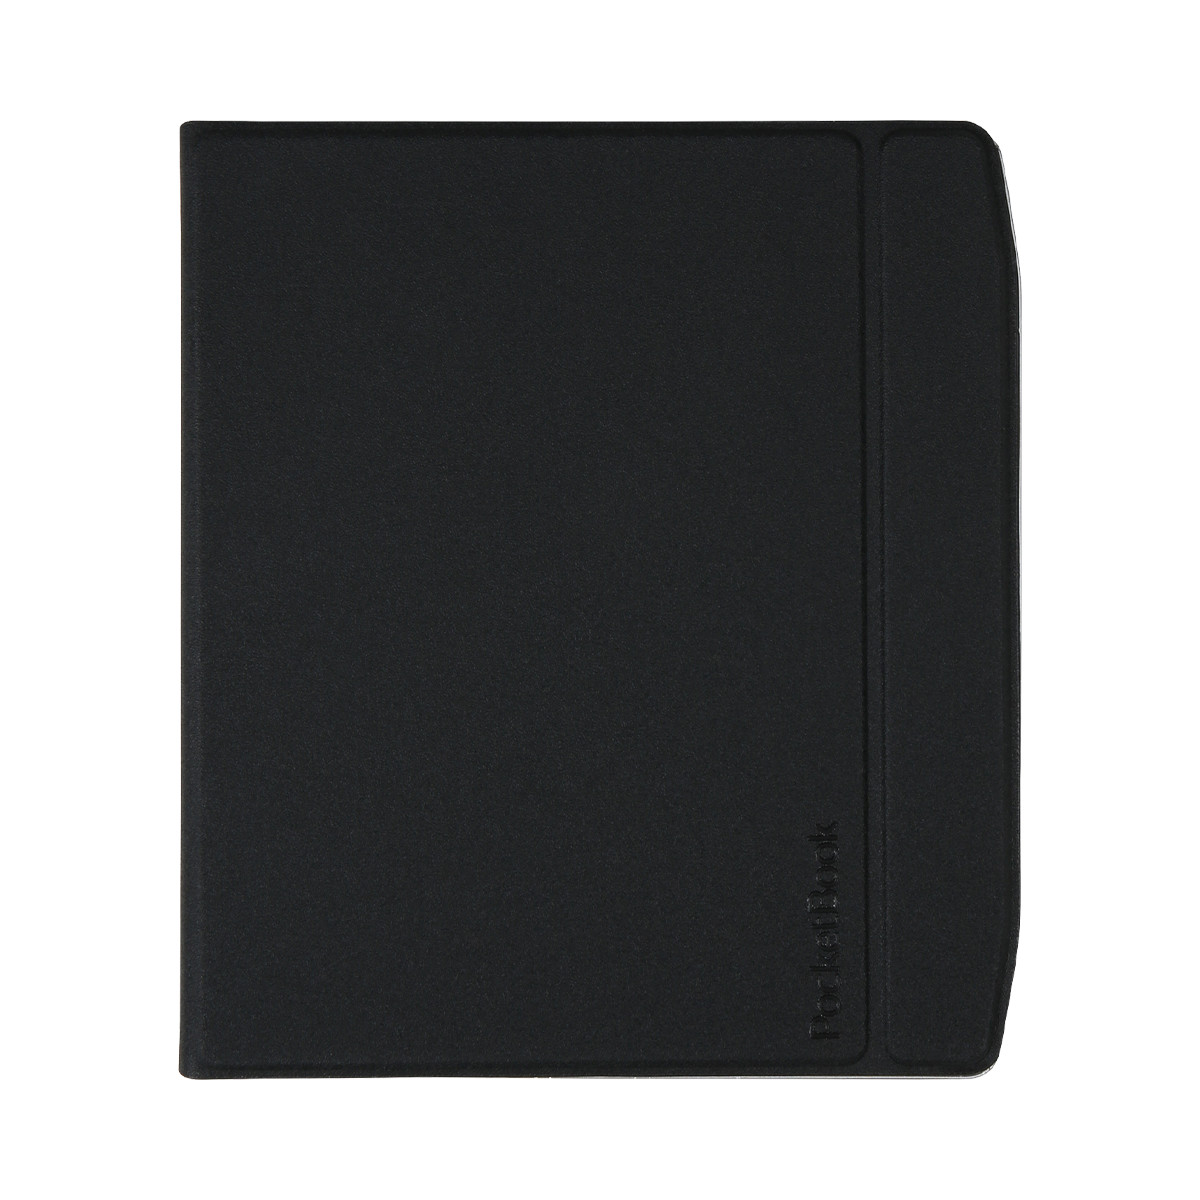 Чехол для электронной книги PocketBook 700 Era Flip, чёрный (HN-FP-PU-700-GG-WW)